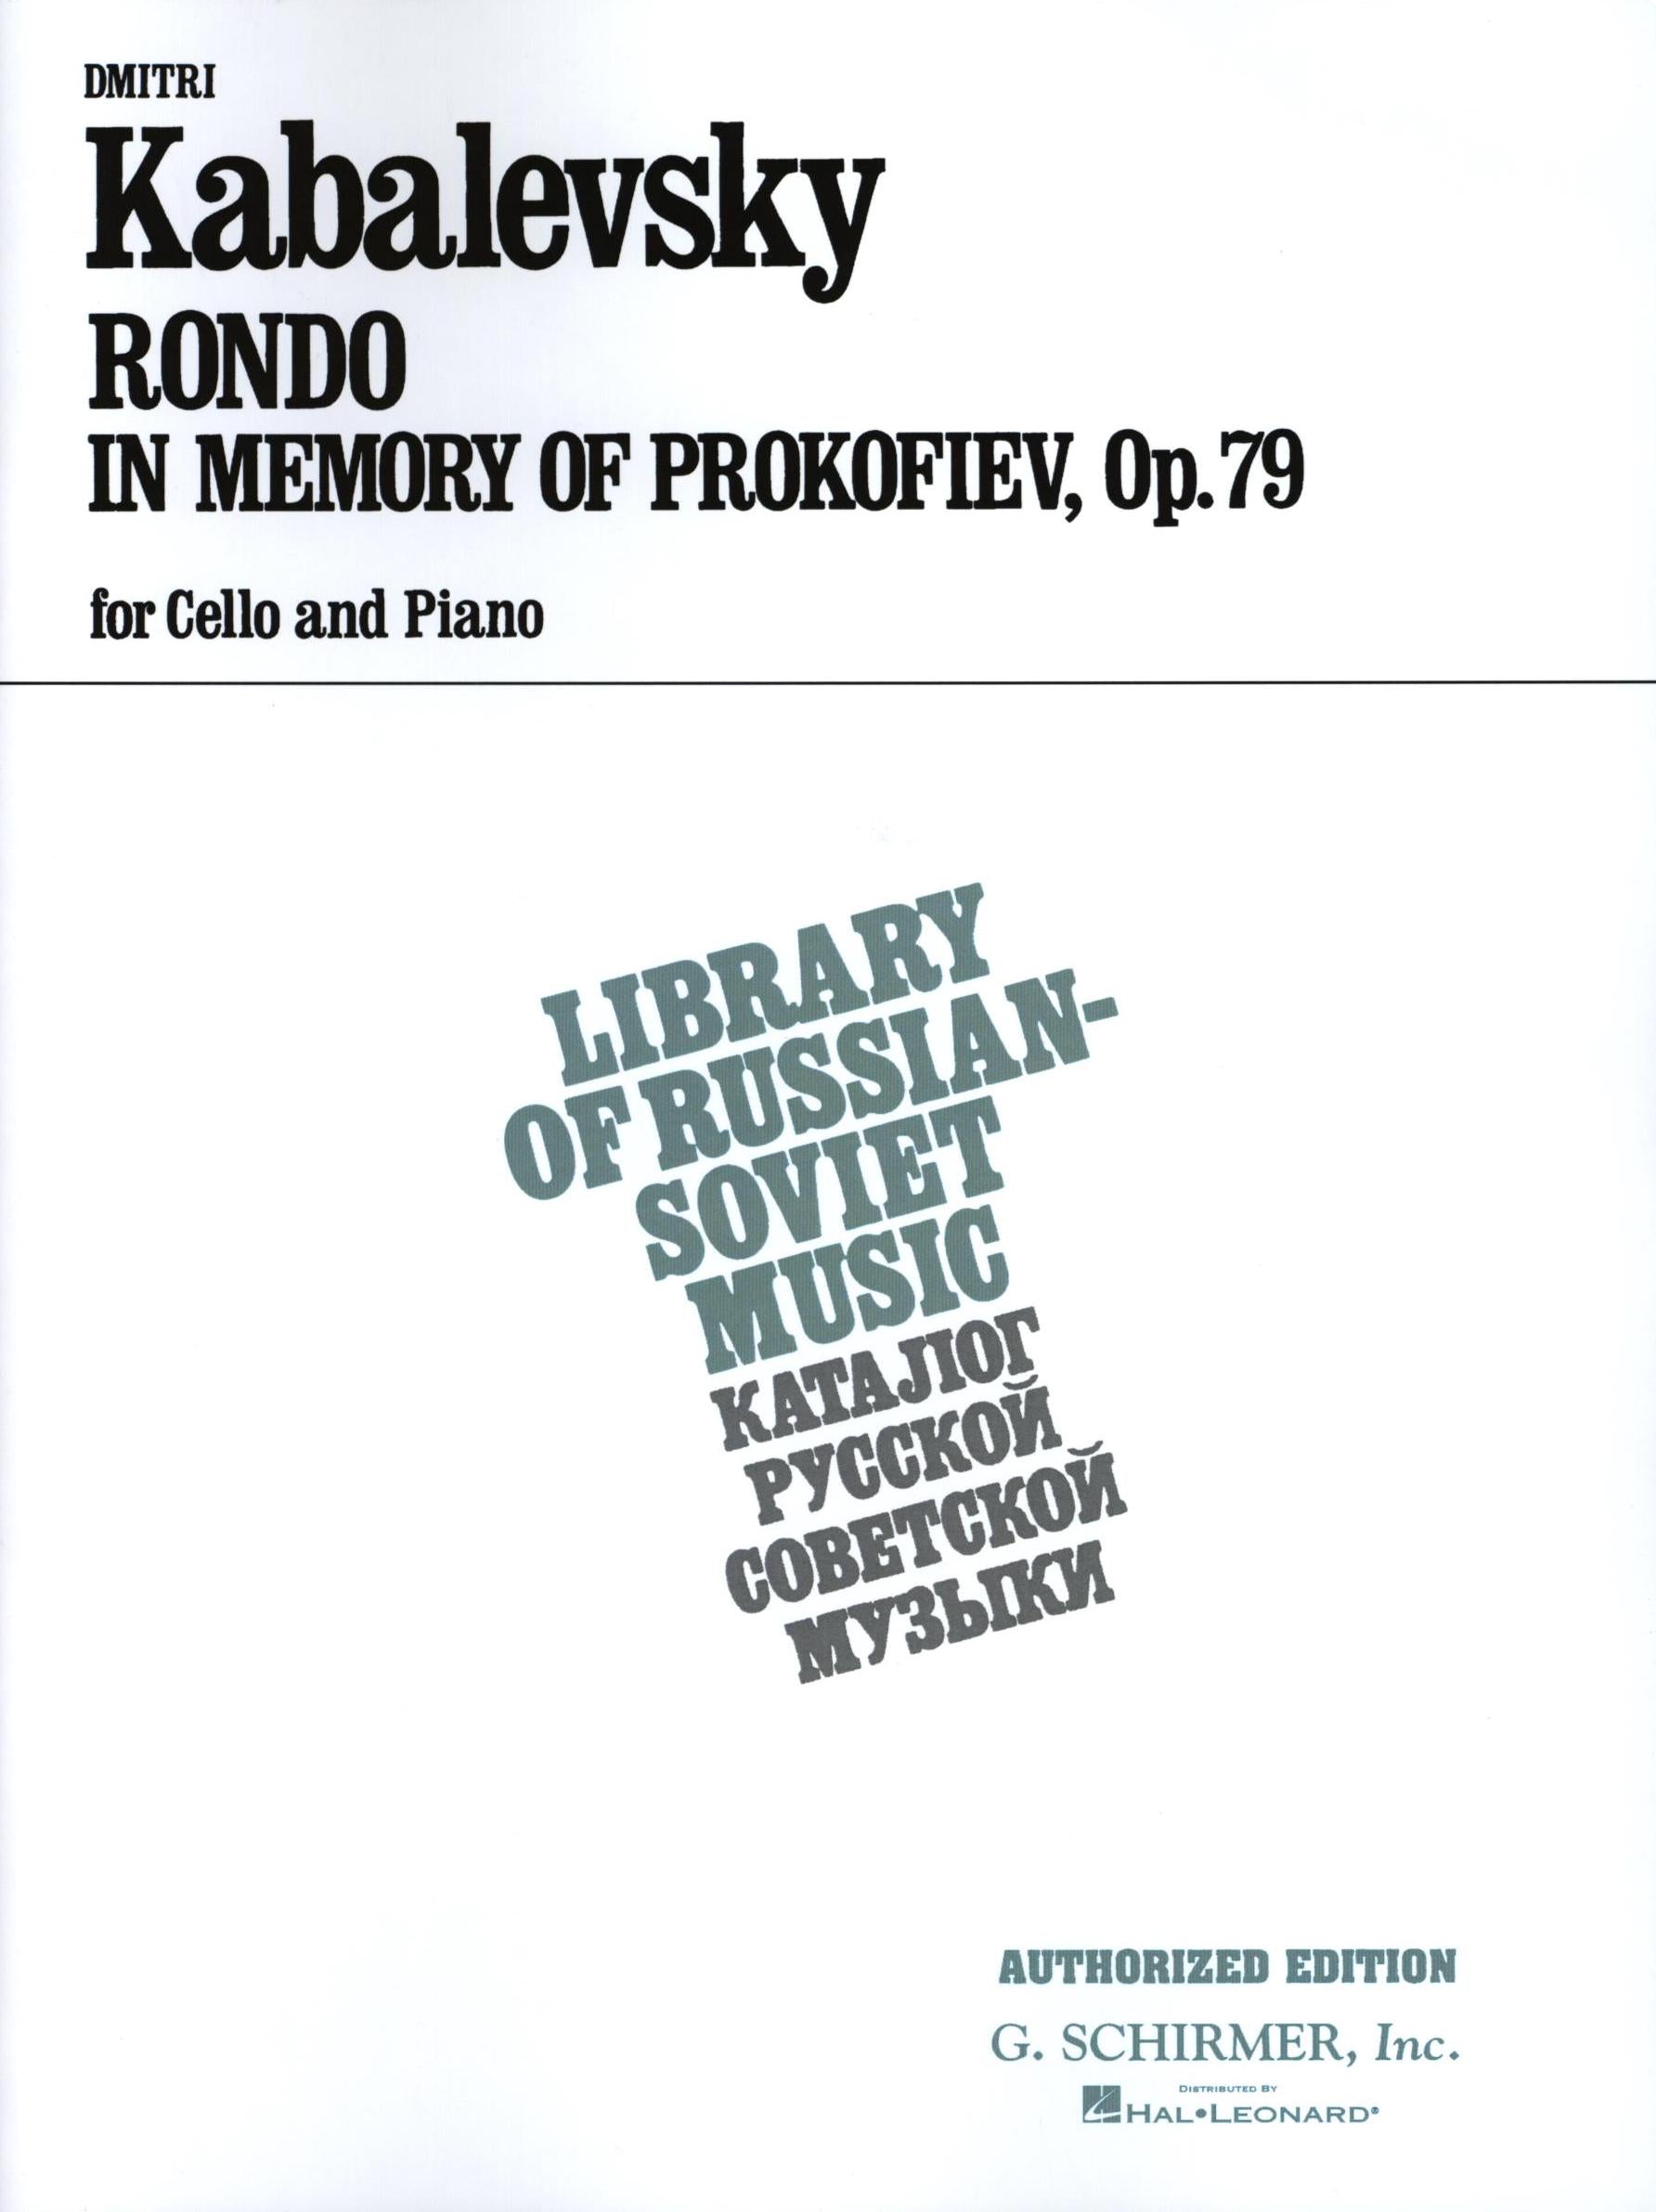 Kabalevsky: Rondo in Memory of Prokofiev, Op. 79